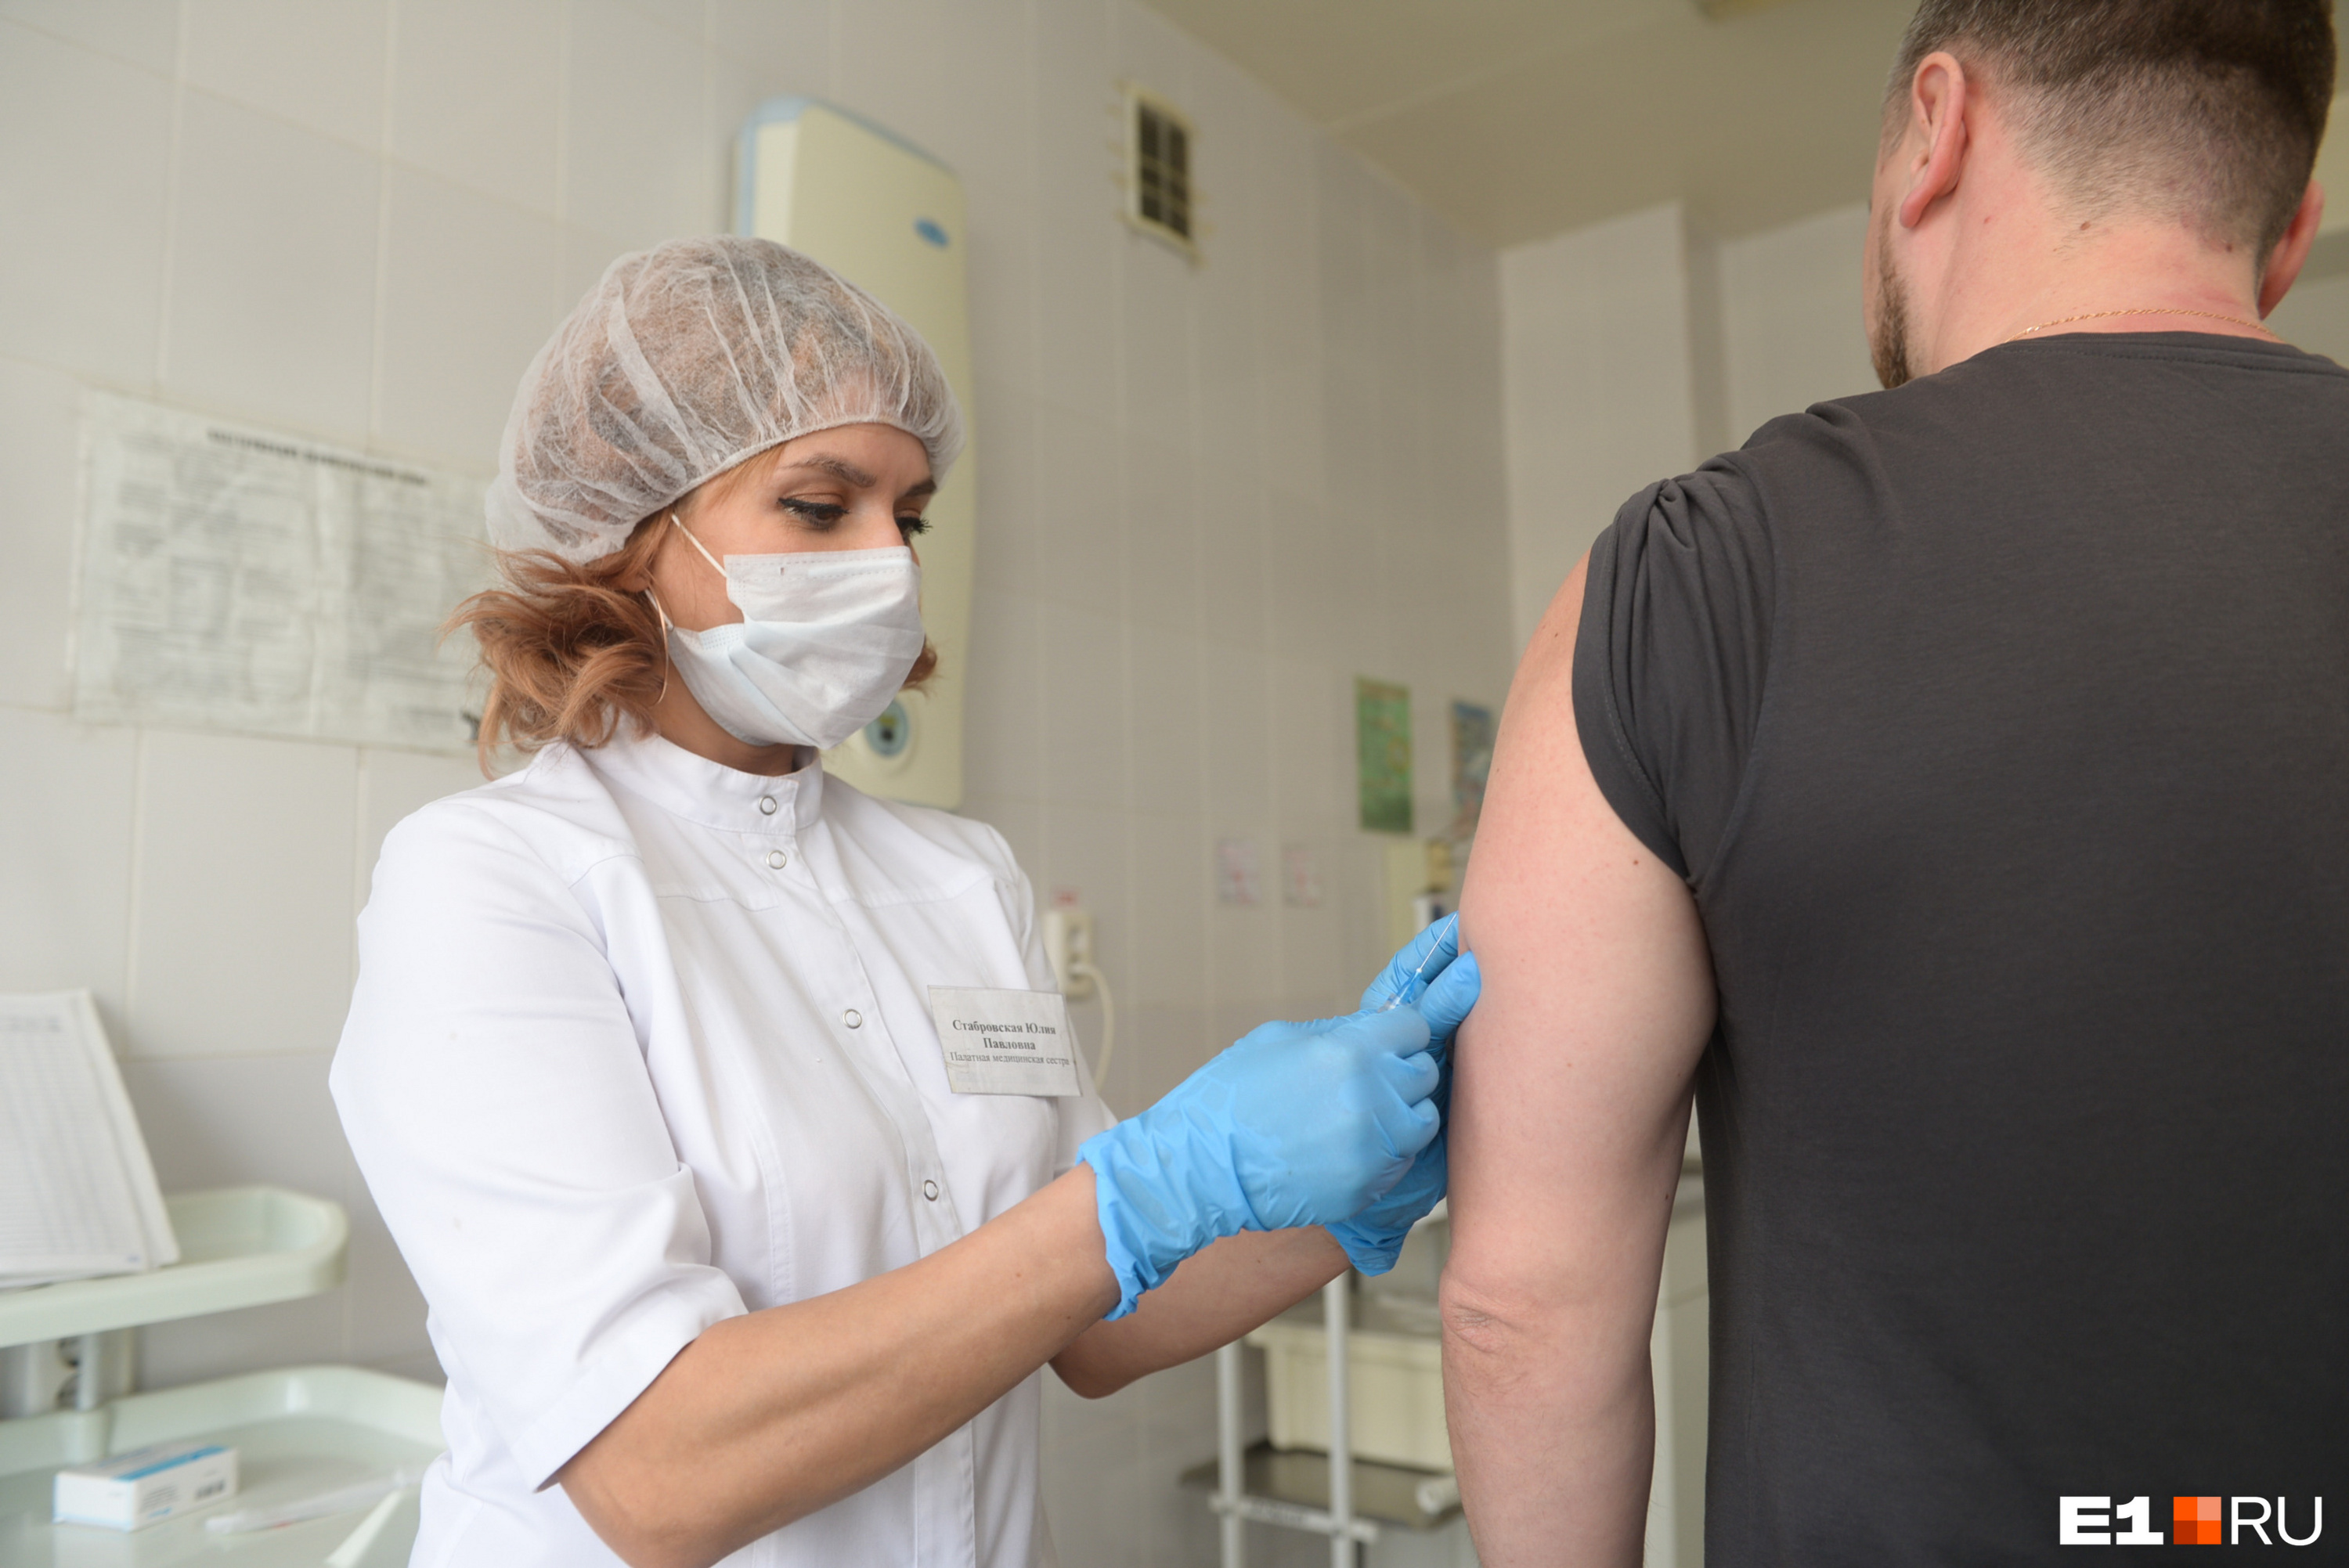 Прививки снижают иммунитет? Педиатр из Екатеринбурга развеяла мифы антиваксеров